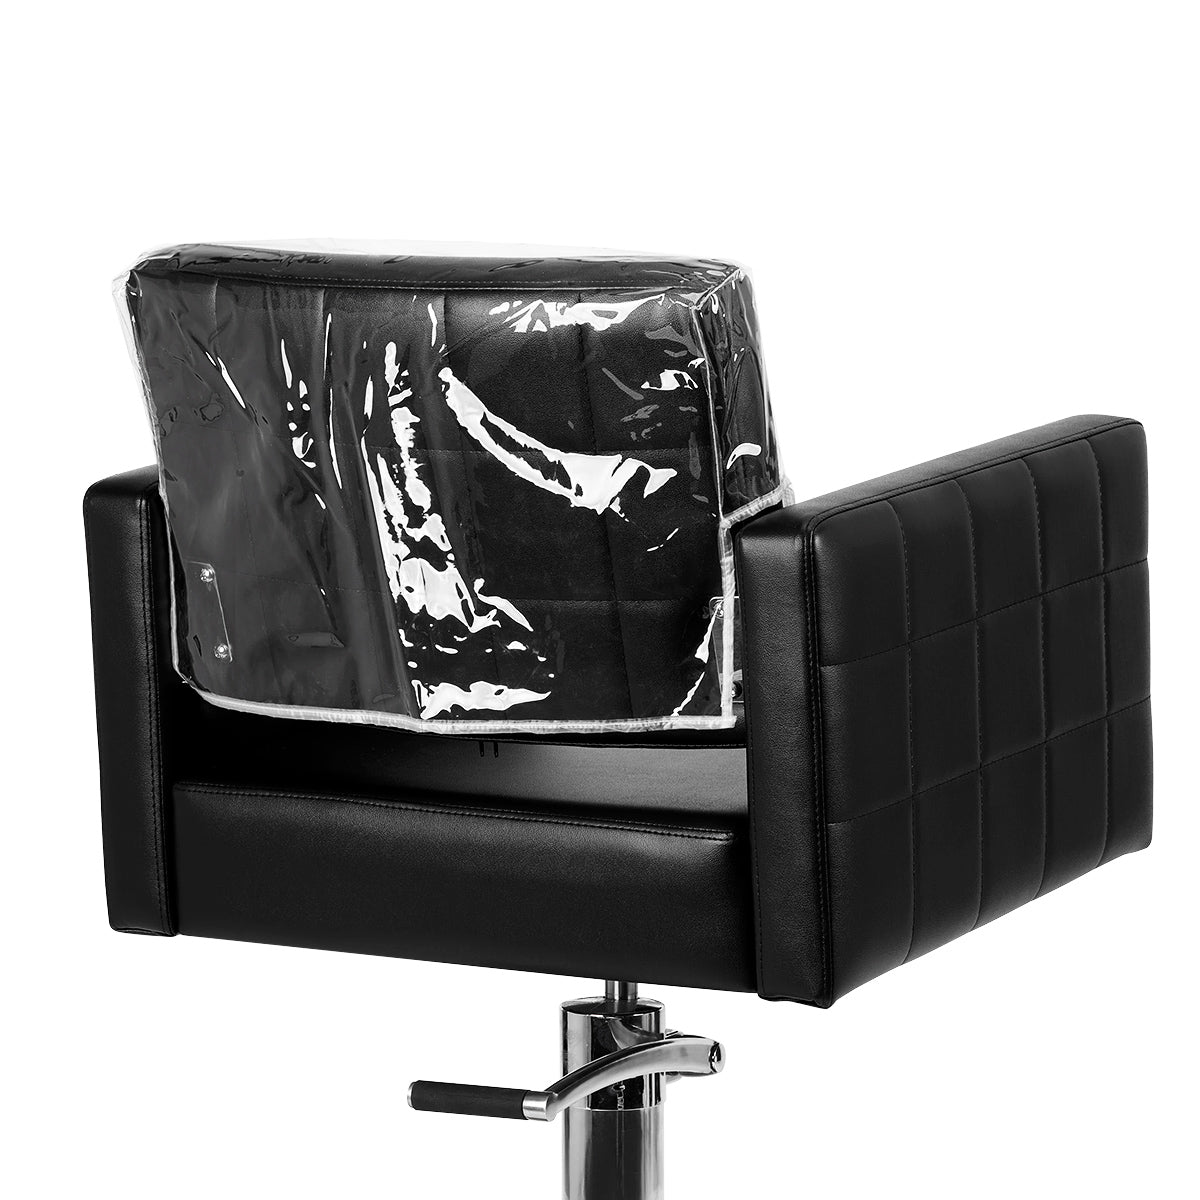 ActiveShop Foil Backrest Cover for Hairdressing Chair